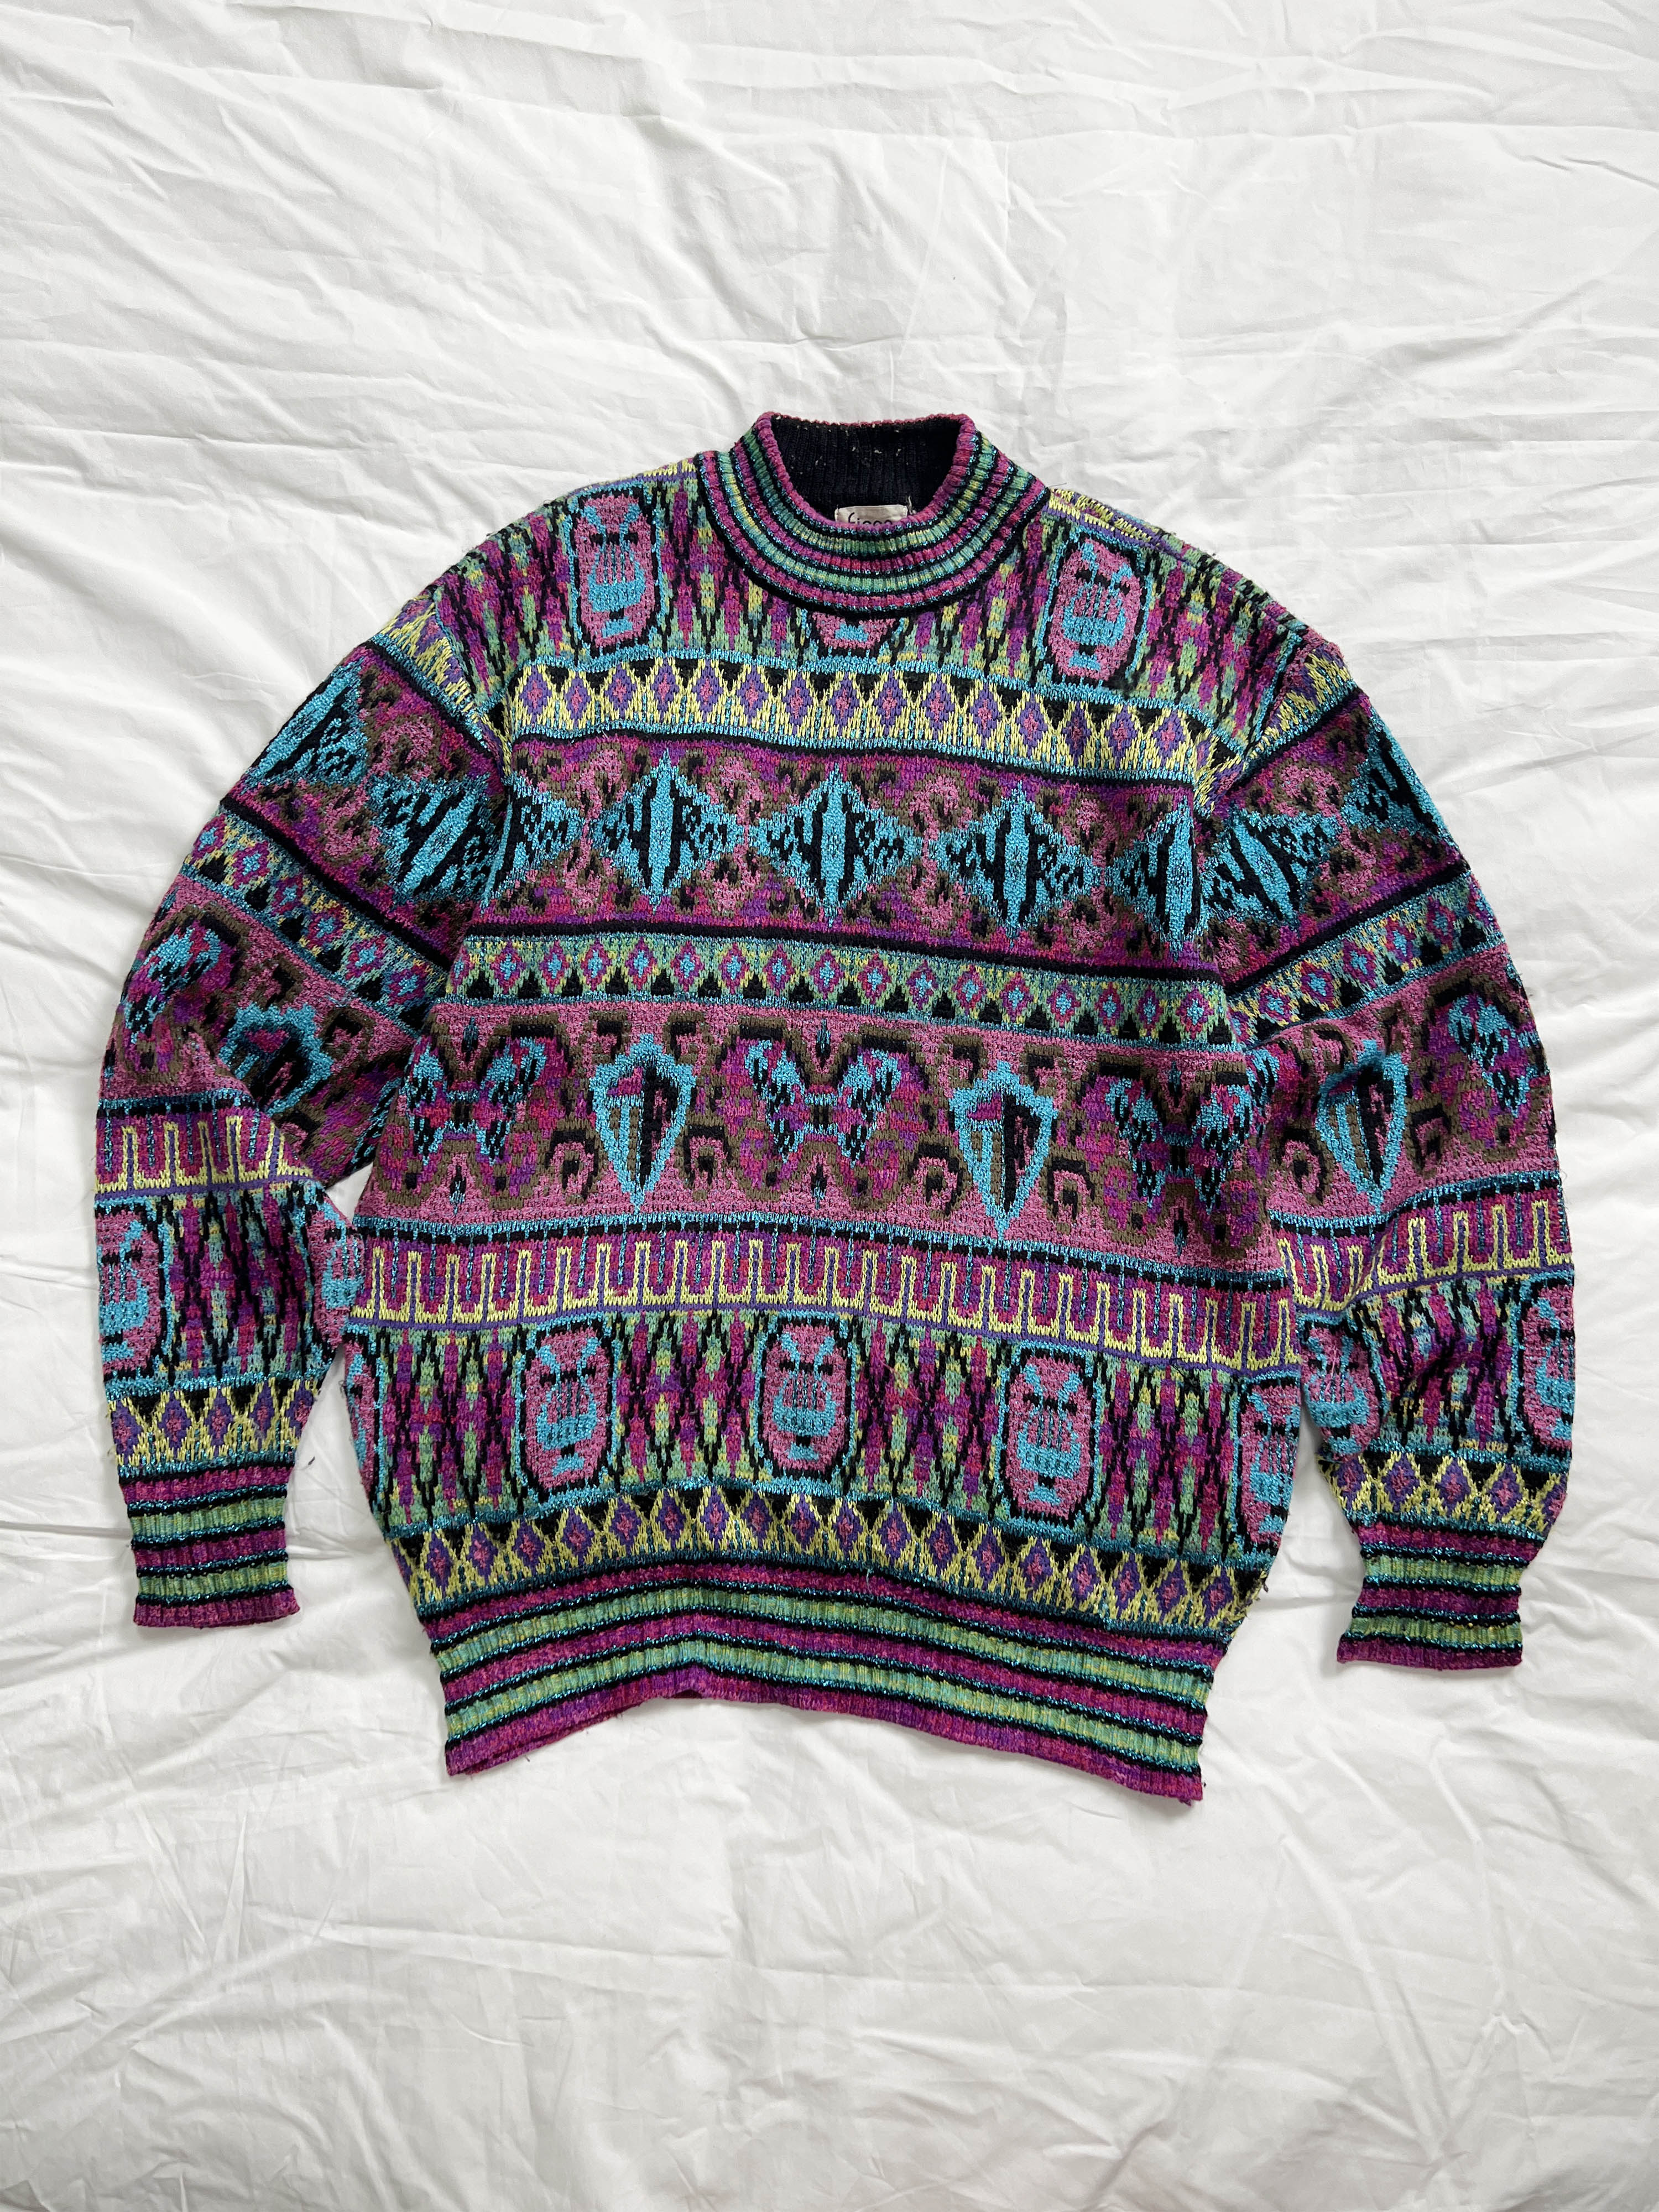 FICCE by yoshiyuki konishi pattern knit